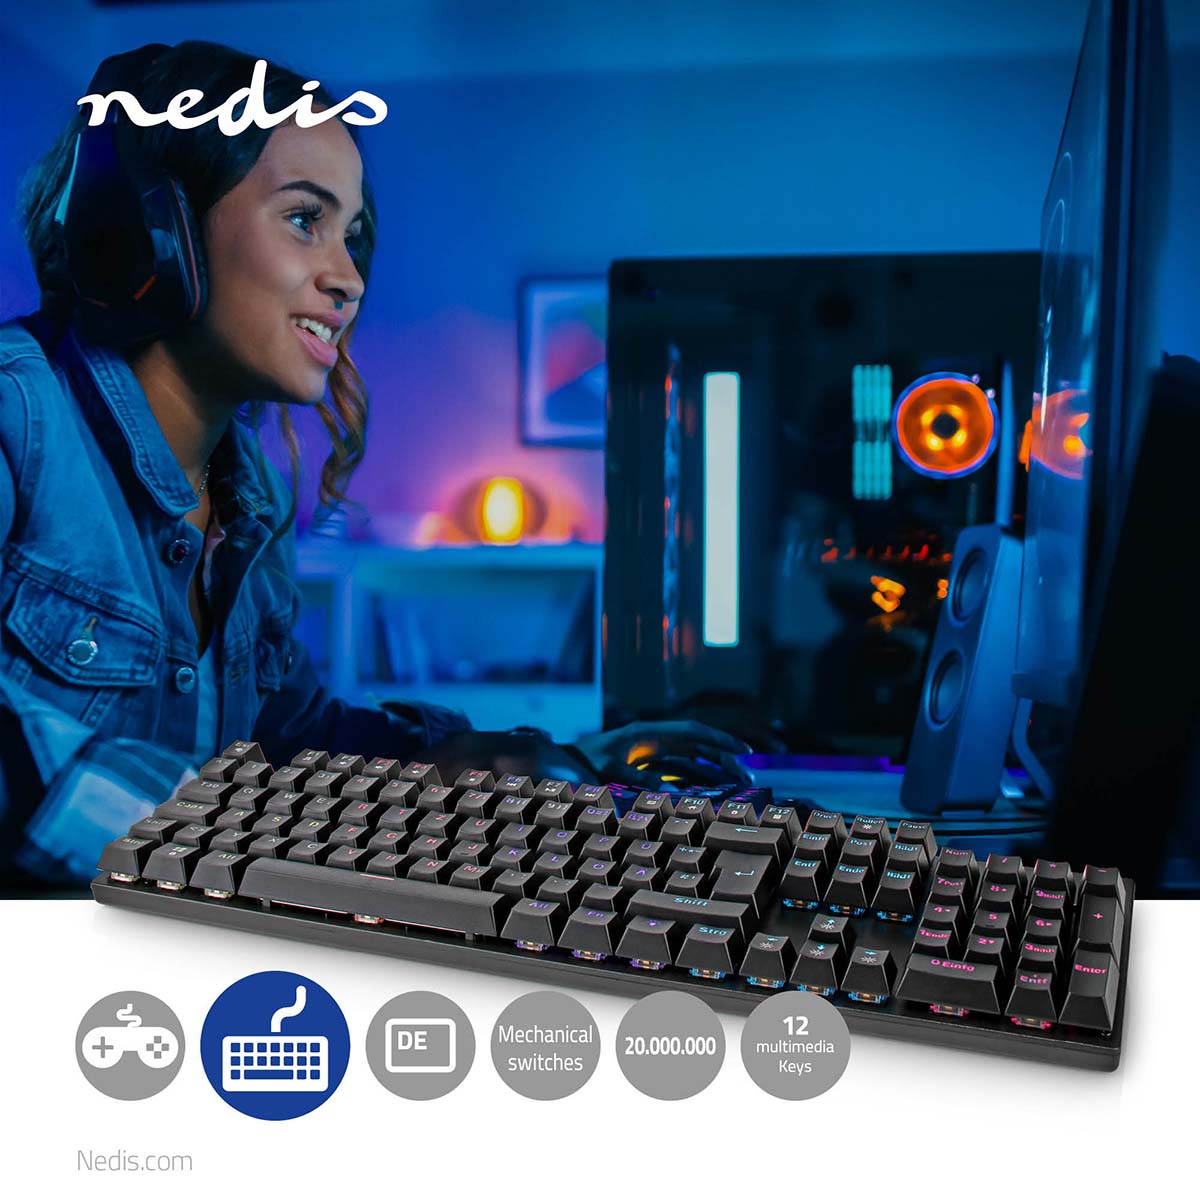 Wired Gaming Keyboard | USB Type-A | Mechanische Tasten | LED | Deutsch | DE-Layout | Stromversorgung über USB | Netzkabellänge: 1.50 m | Gaming